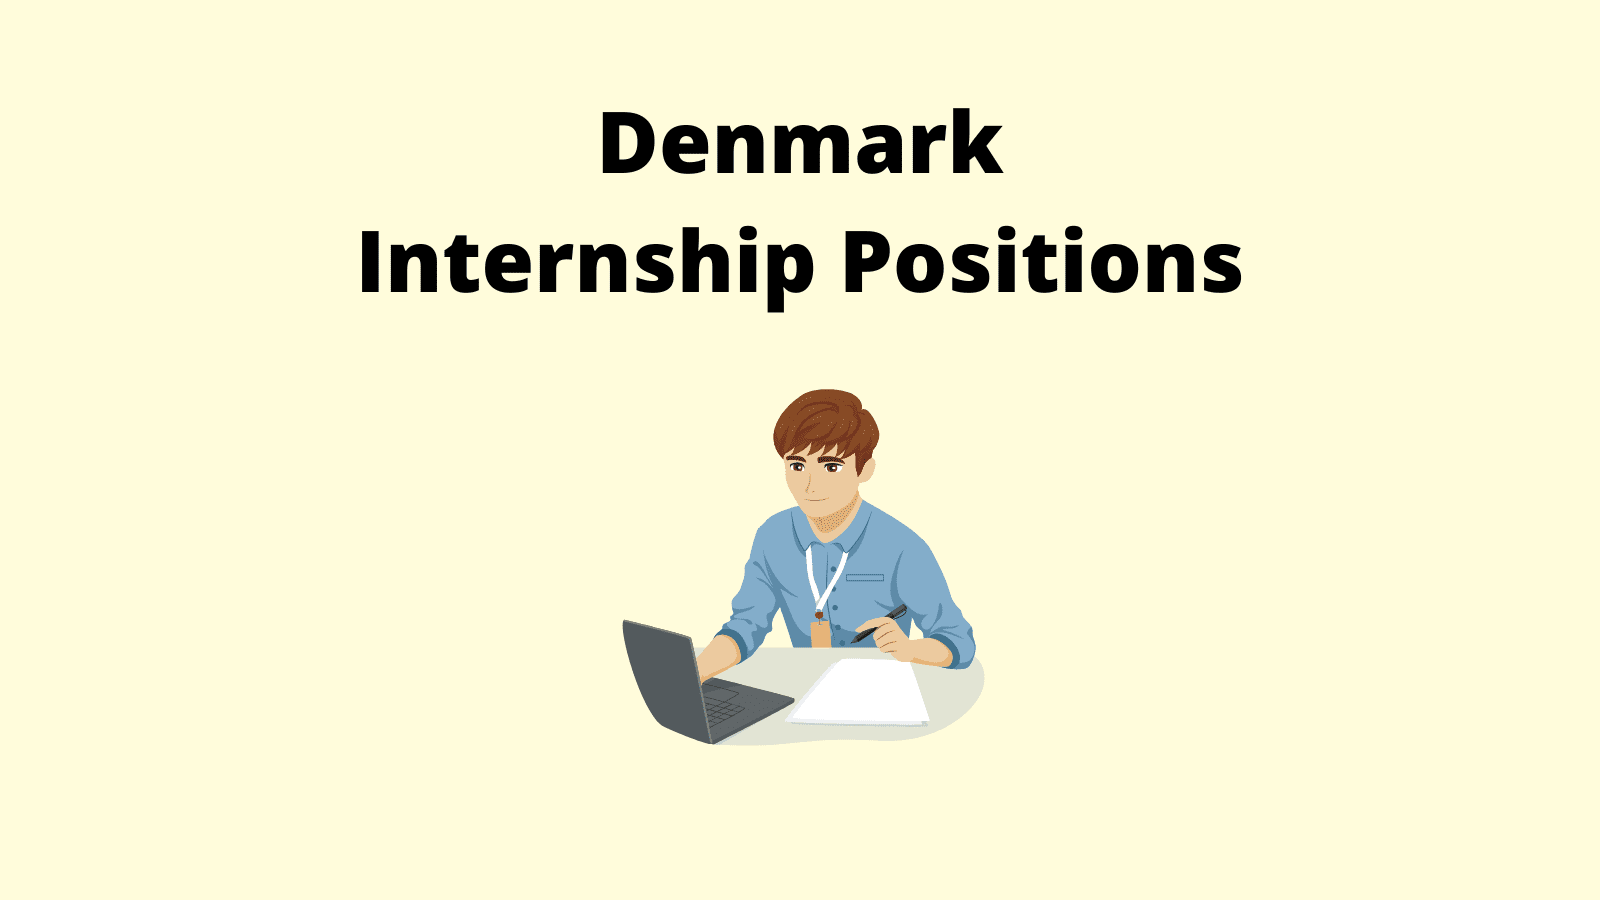 Denmark Internship Positions